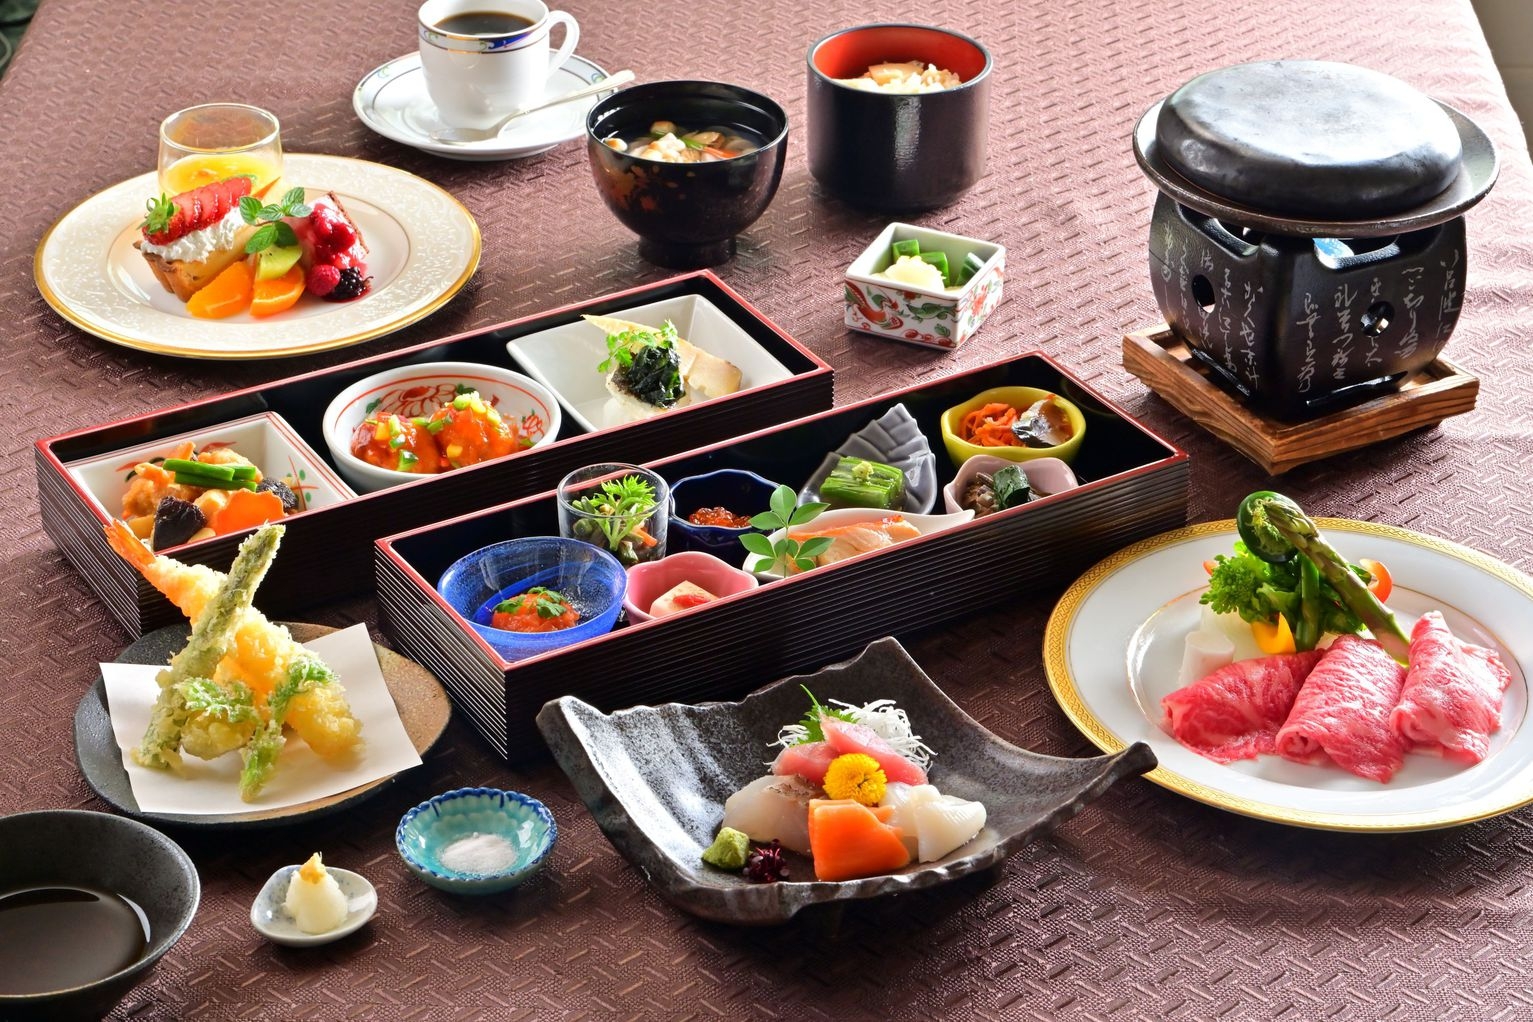 【ふくしまプライド。】福島の食材を五感で楽しむ 新鮮食材の宝箱♪ 特製おもてなし膳 1泊2食プラン